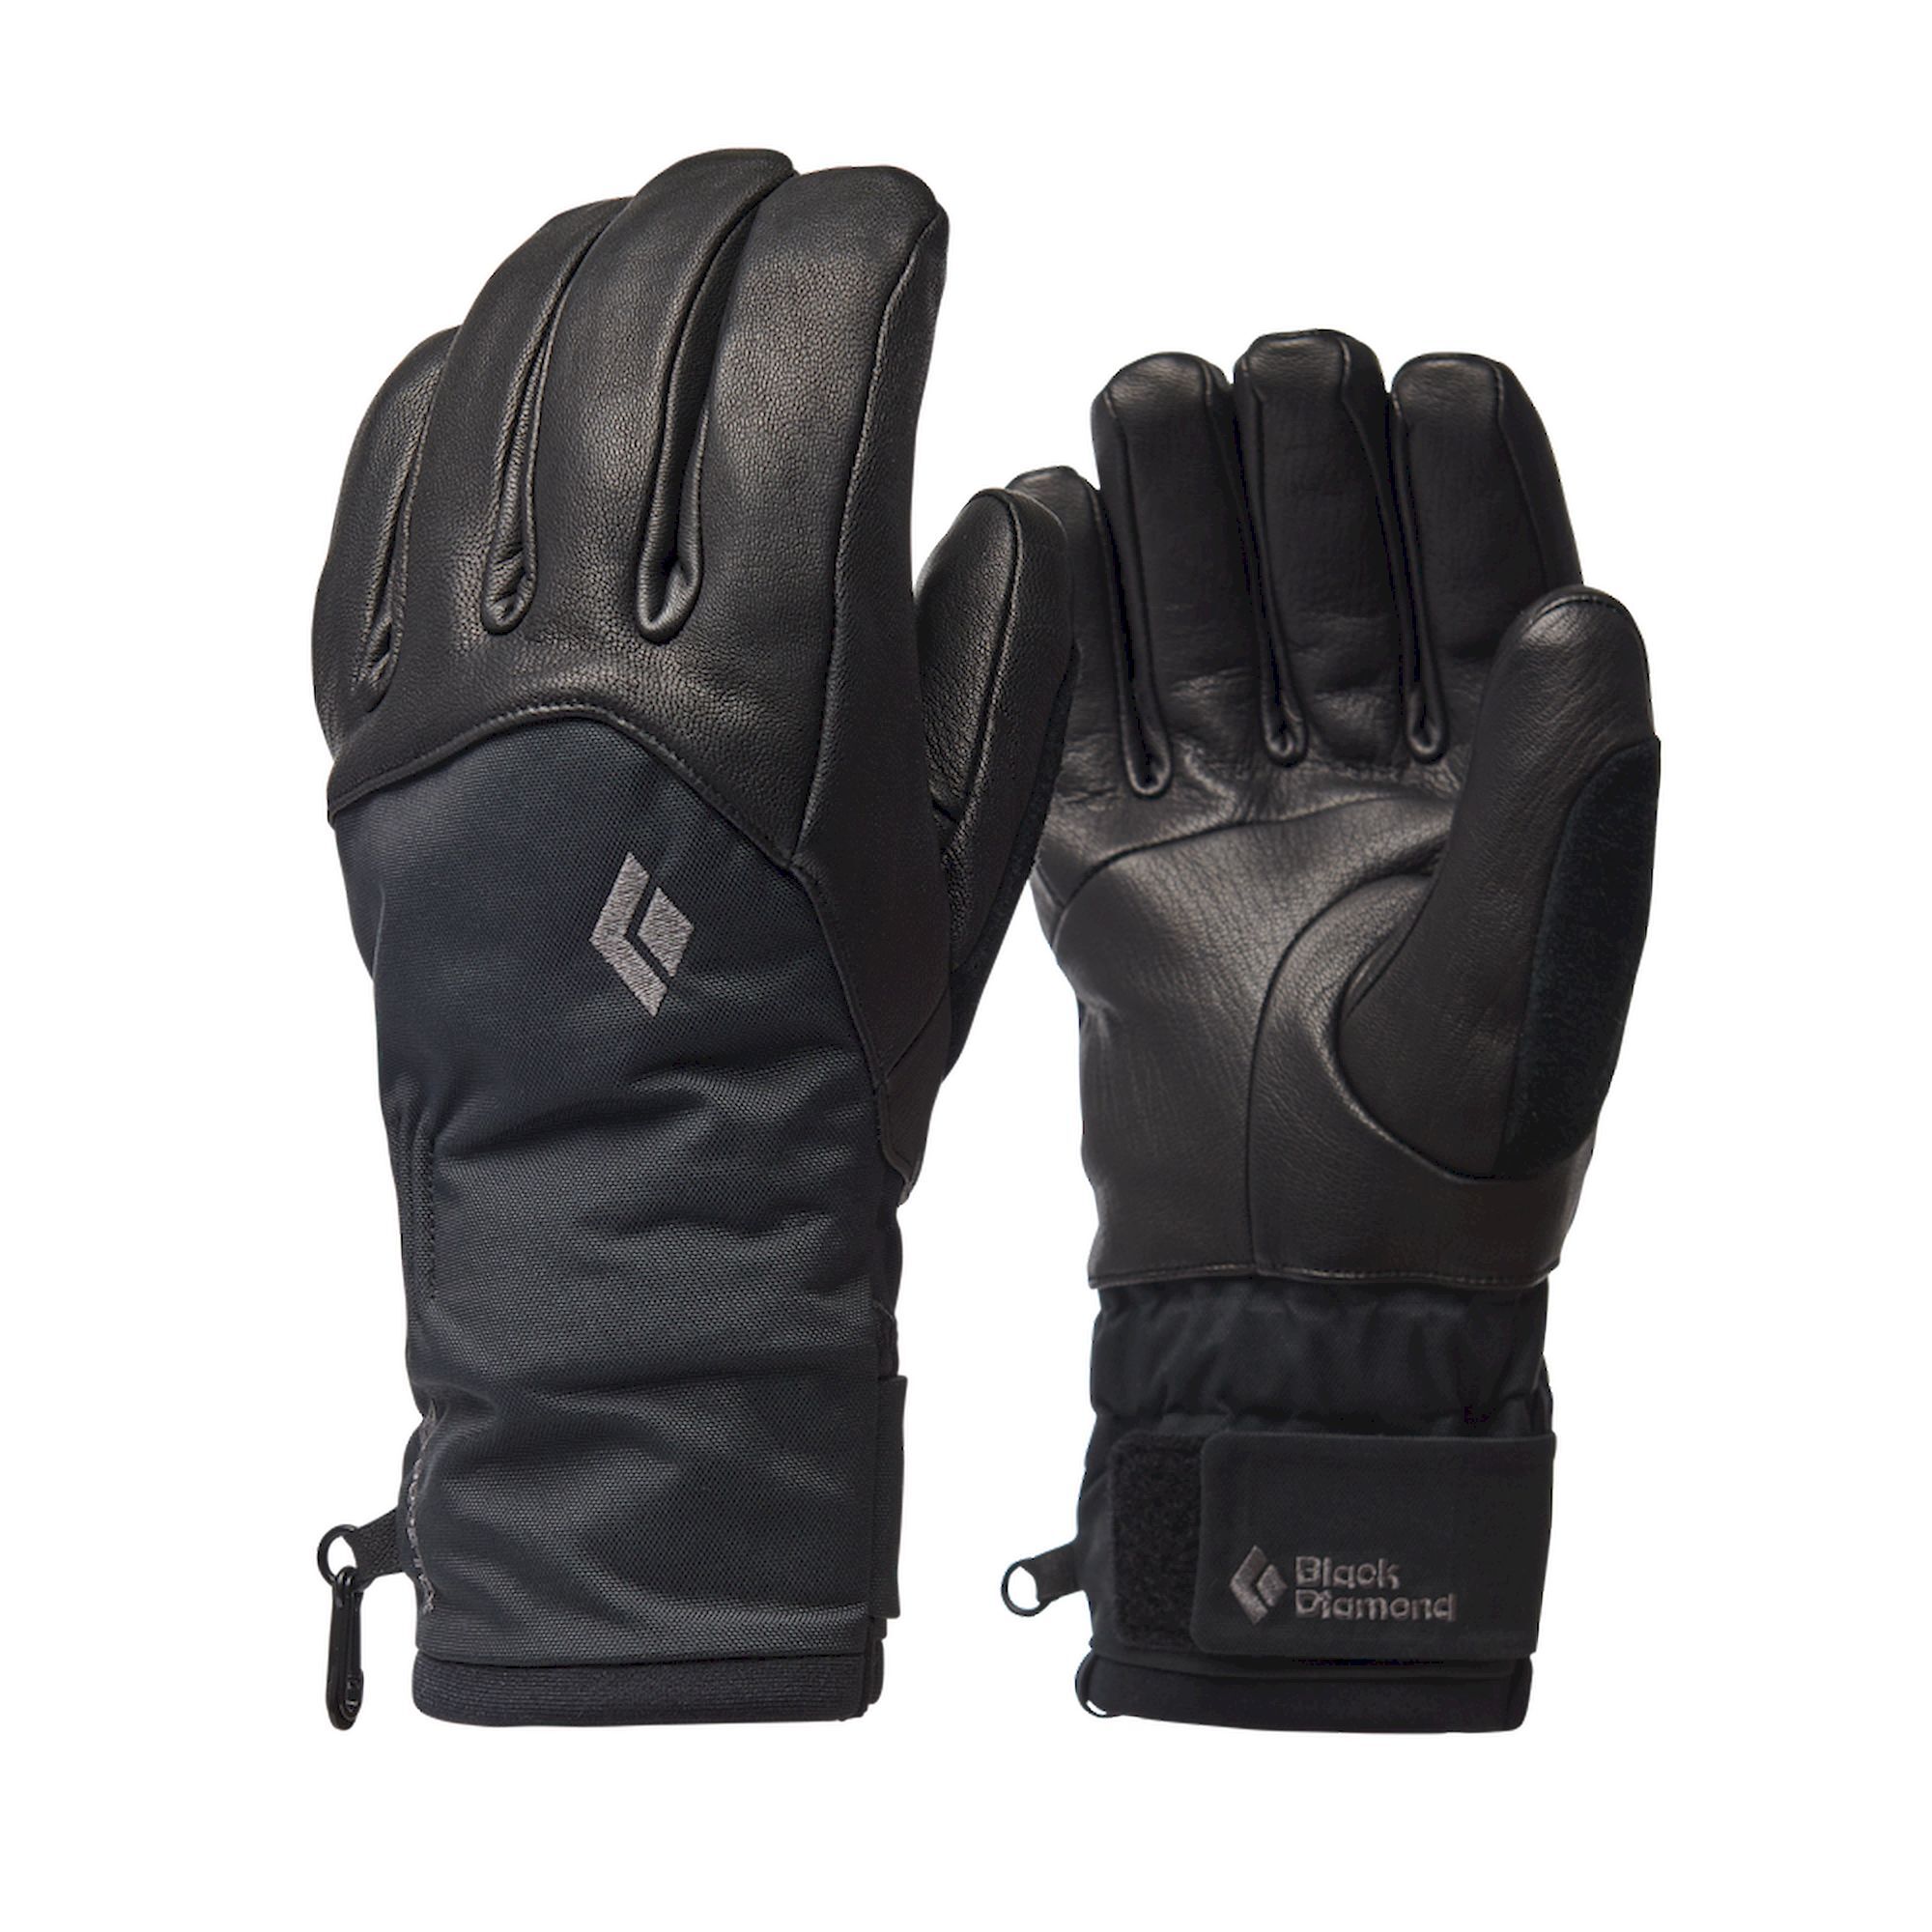 Black Diamond Legend Gloves - Ski gloves - Women's